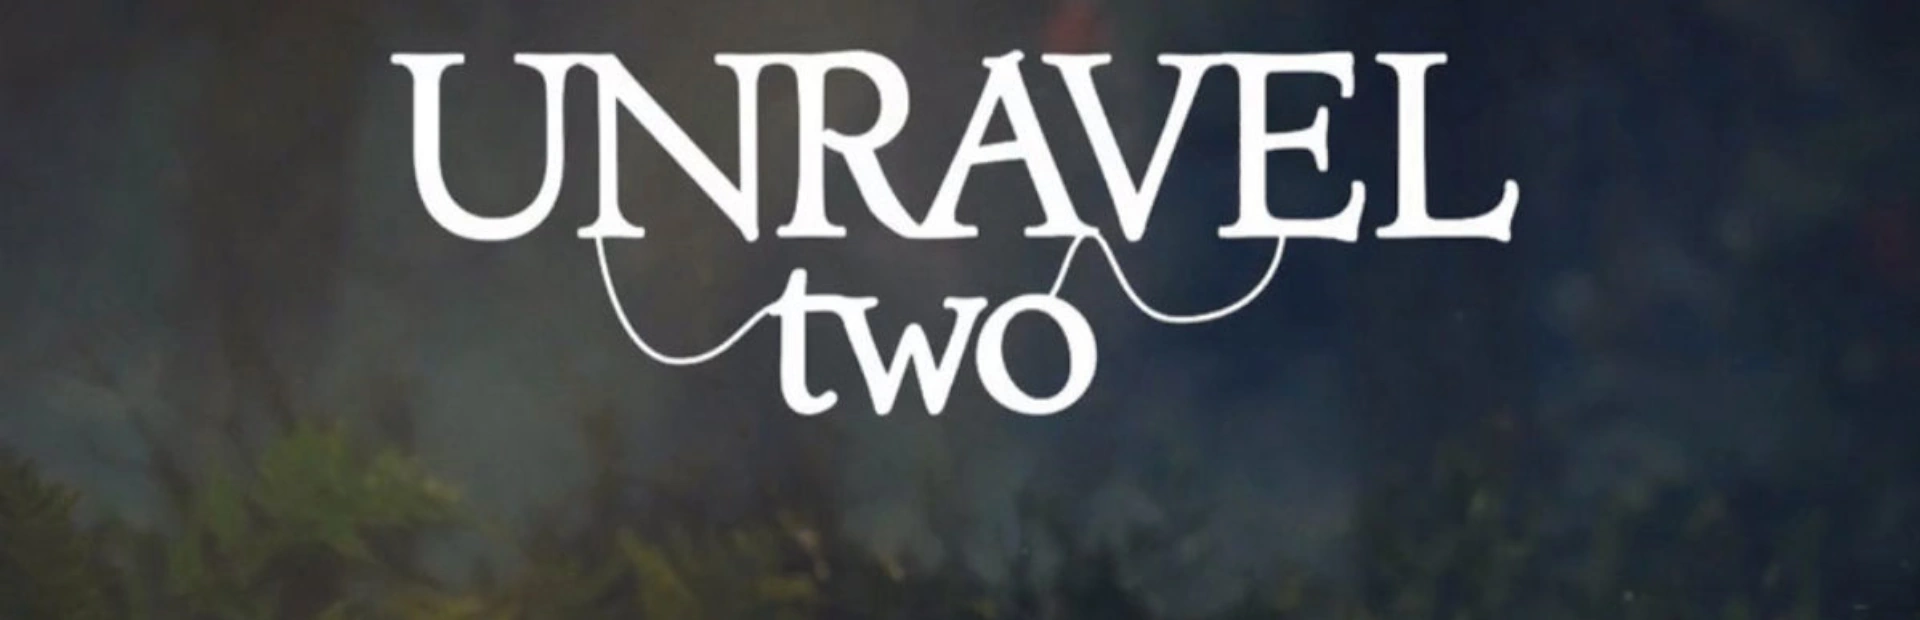 دانلود بازی Unravel 2 برای کامپیوتر - بازی آنرول 2 | گیمباتو